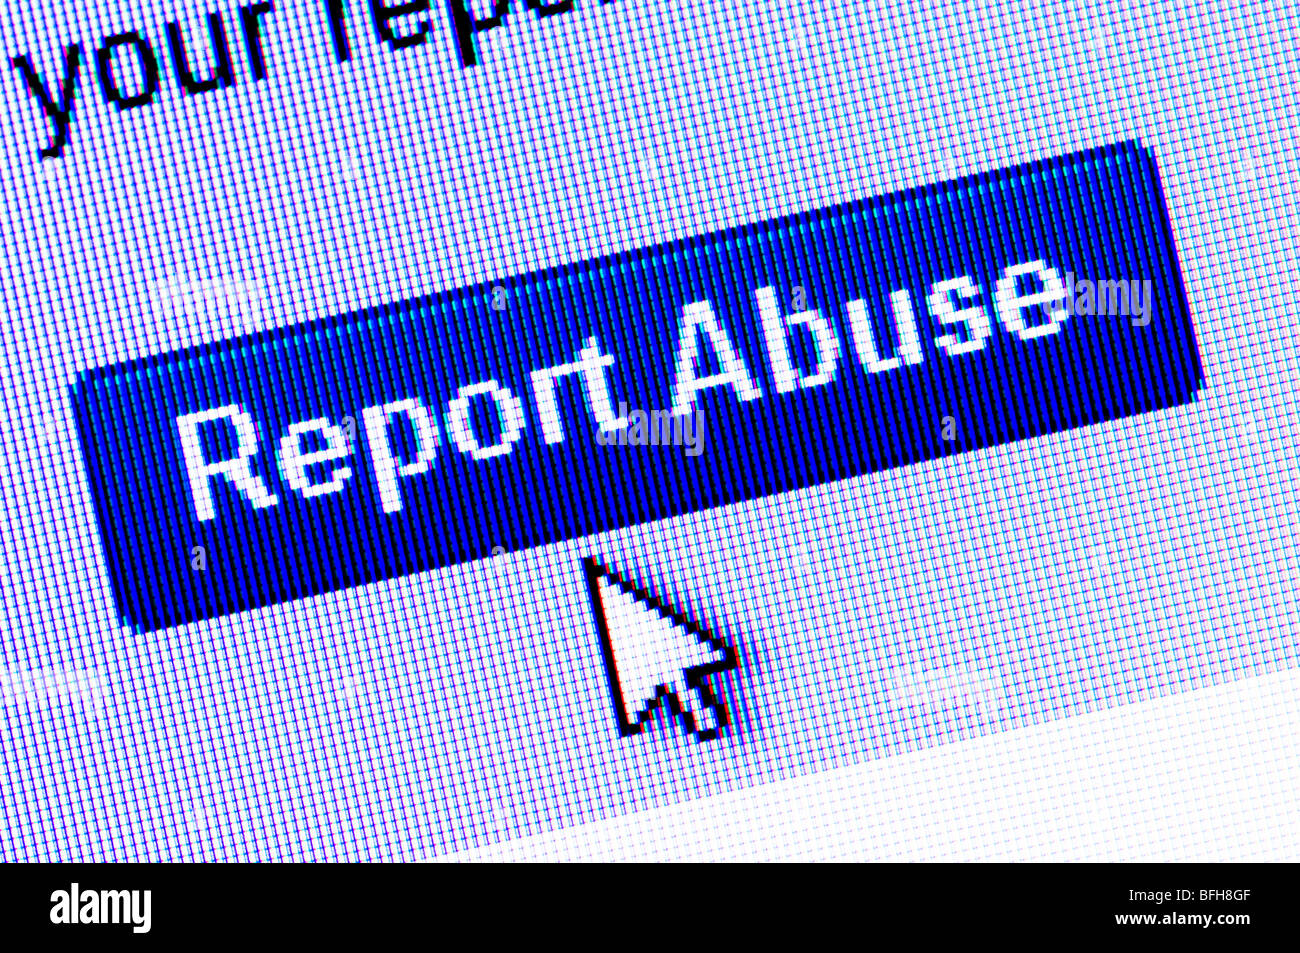 Captura de pantalla de la macro Reportar Abuso icono en el sitio web de redes sociales Bebo - una iniciativa para detener el acoso en línea. Foto de stock